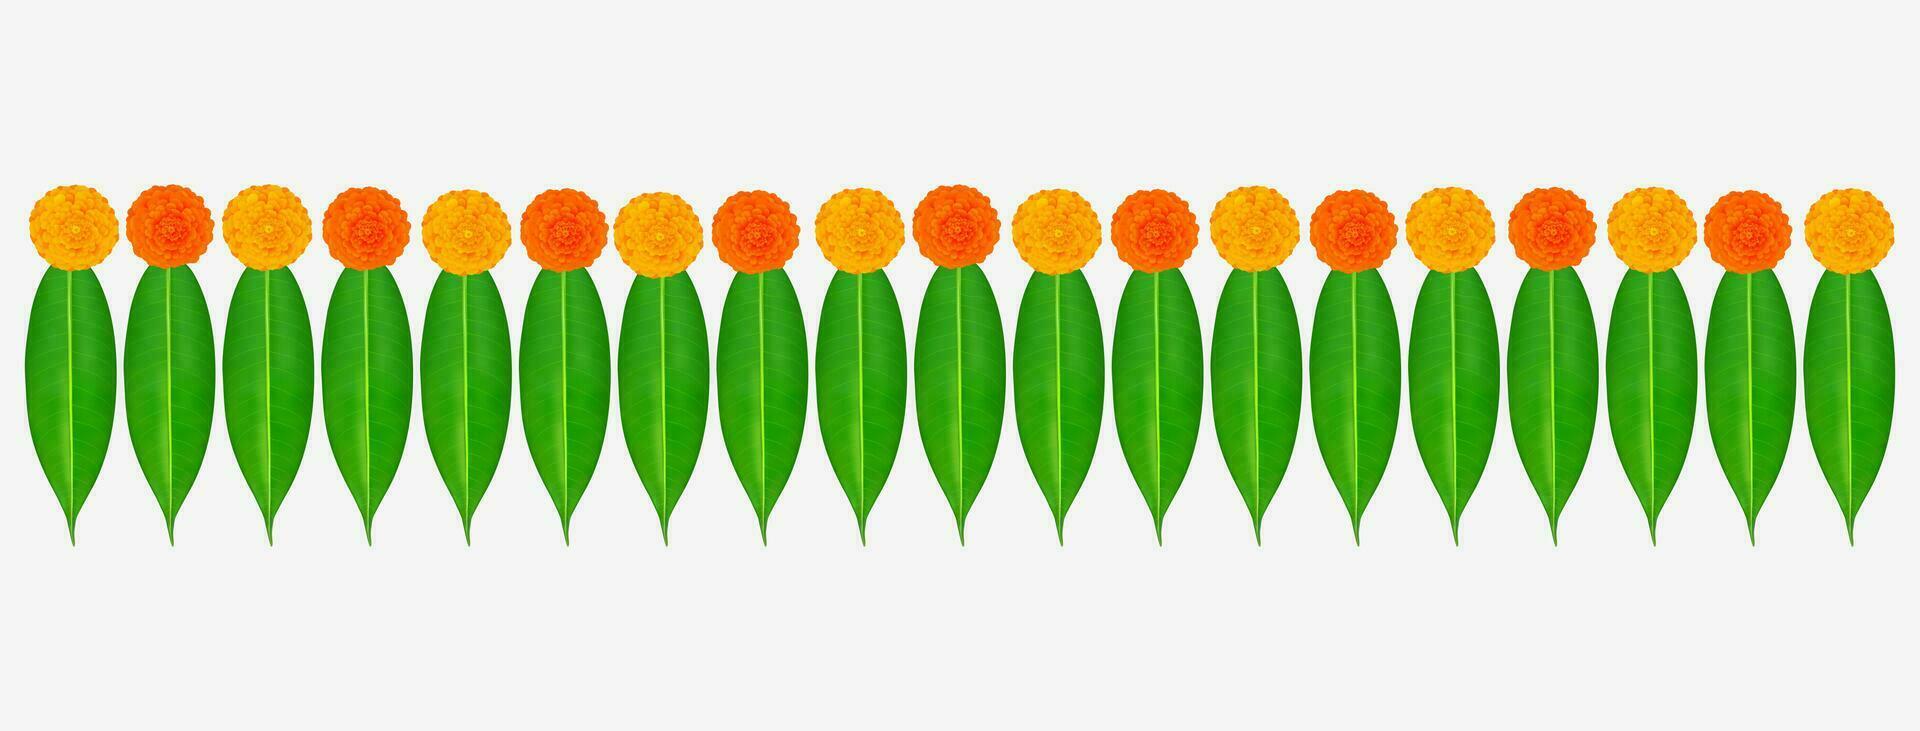 traditioneel Indisch goudsbloem bloem slinger met mango bladeren. decoratie voor Indisch Hindoe vakantie of bruiloften of puja festival, Indisch festival bloem decoratie vector